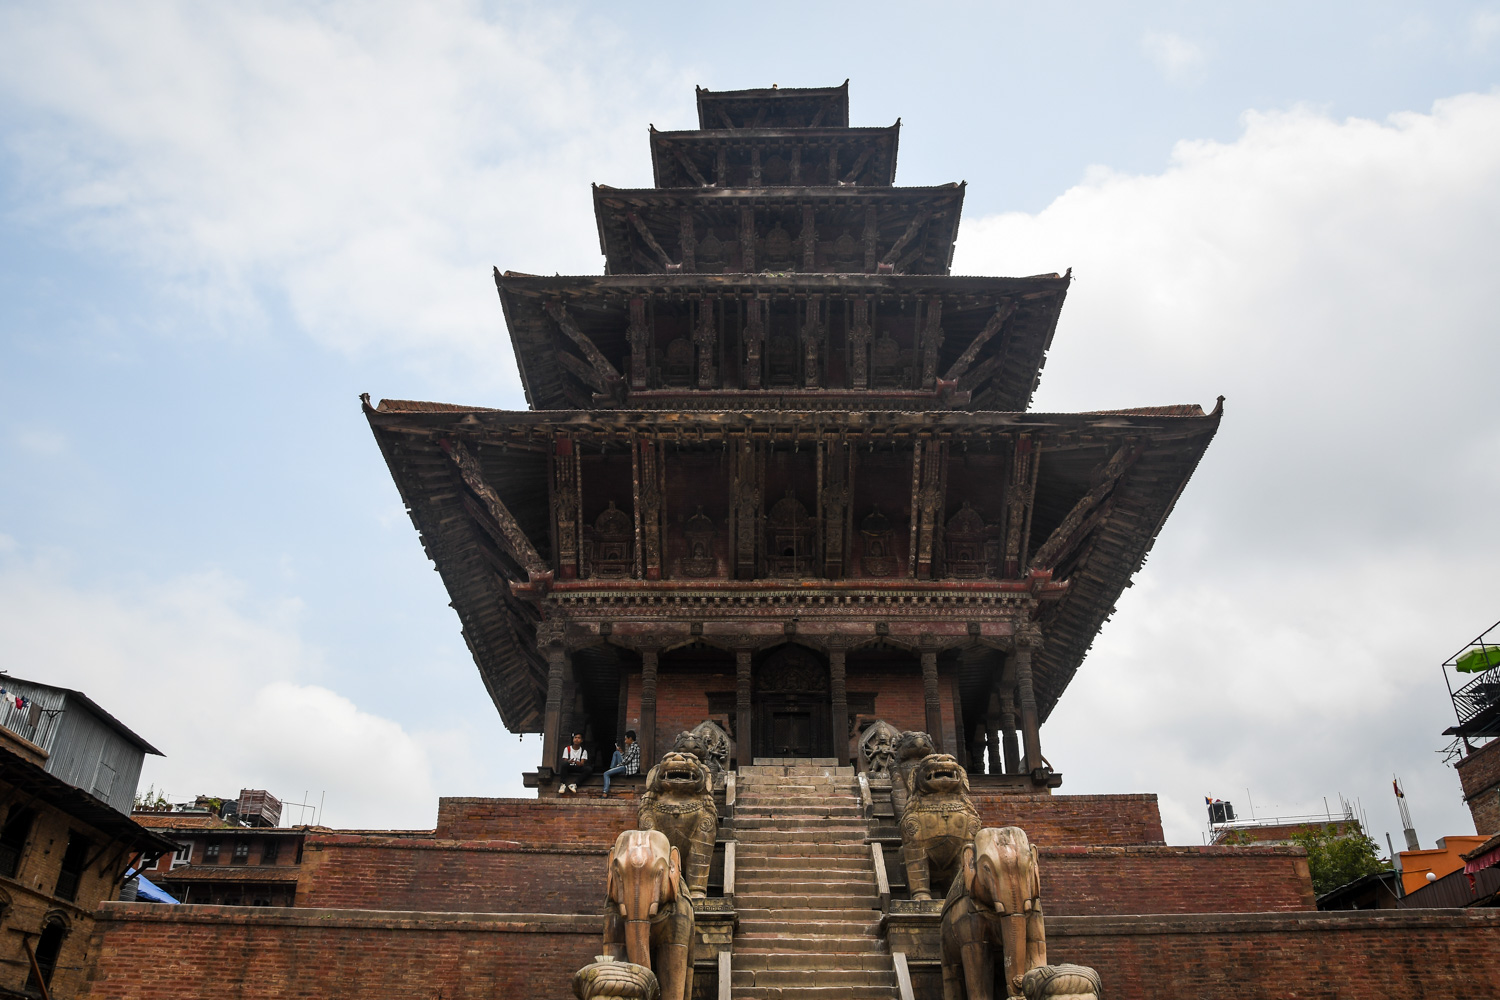 在尼泊尔必做的事情巴克塔普尔杜巴广场5层寺庙